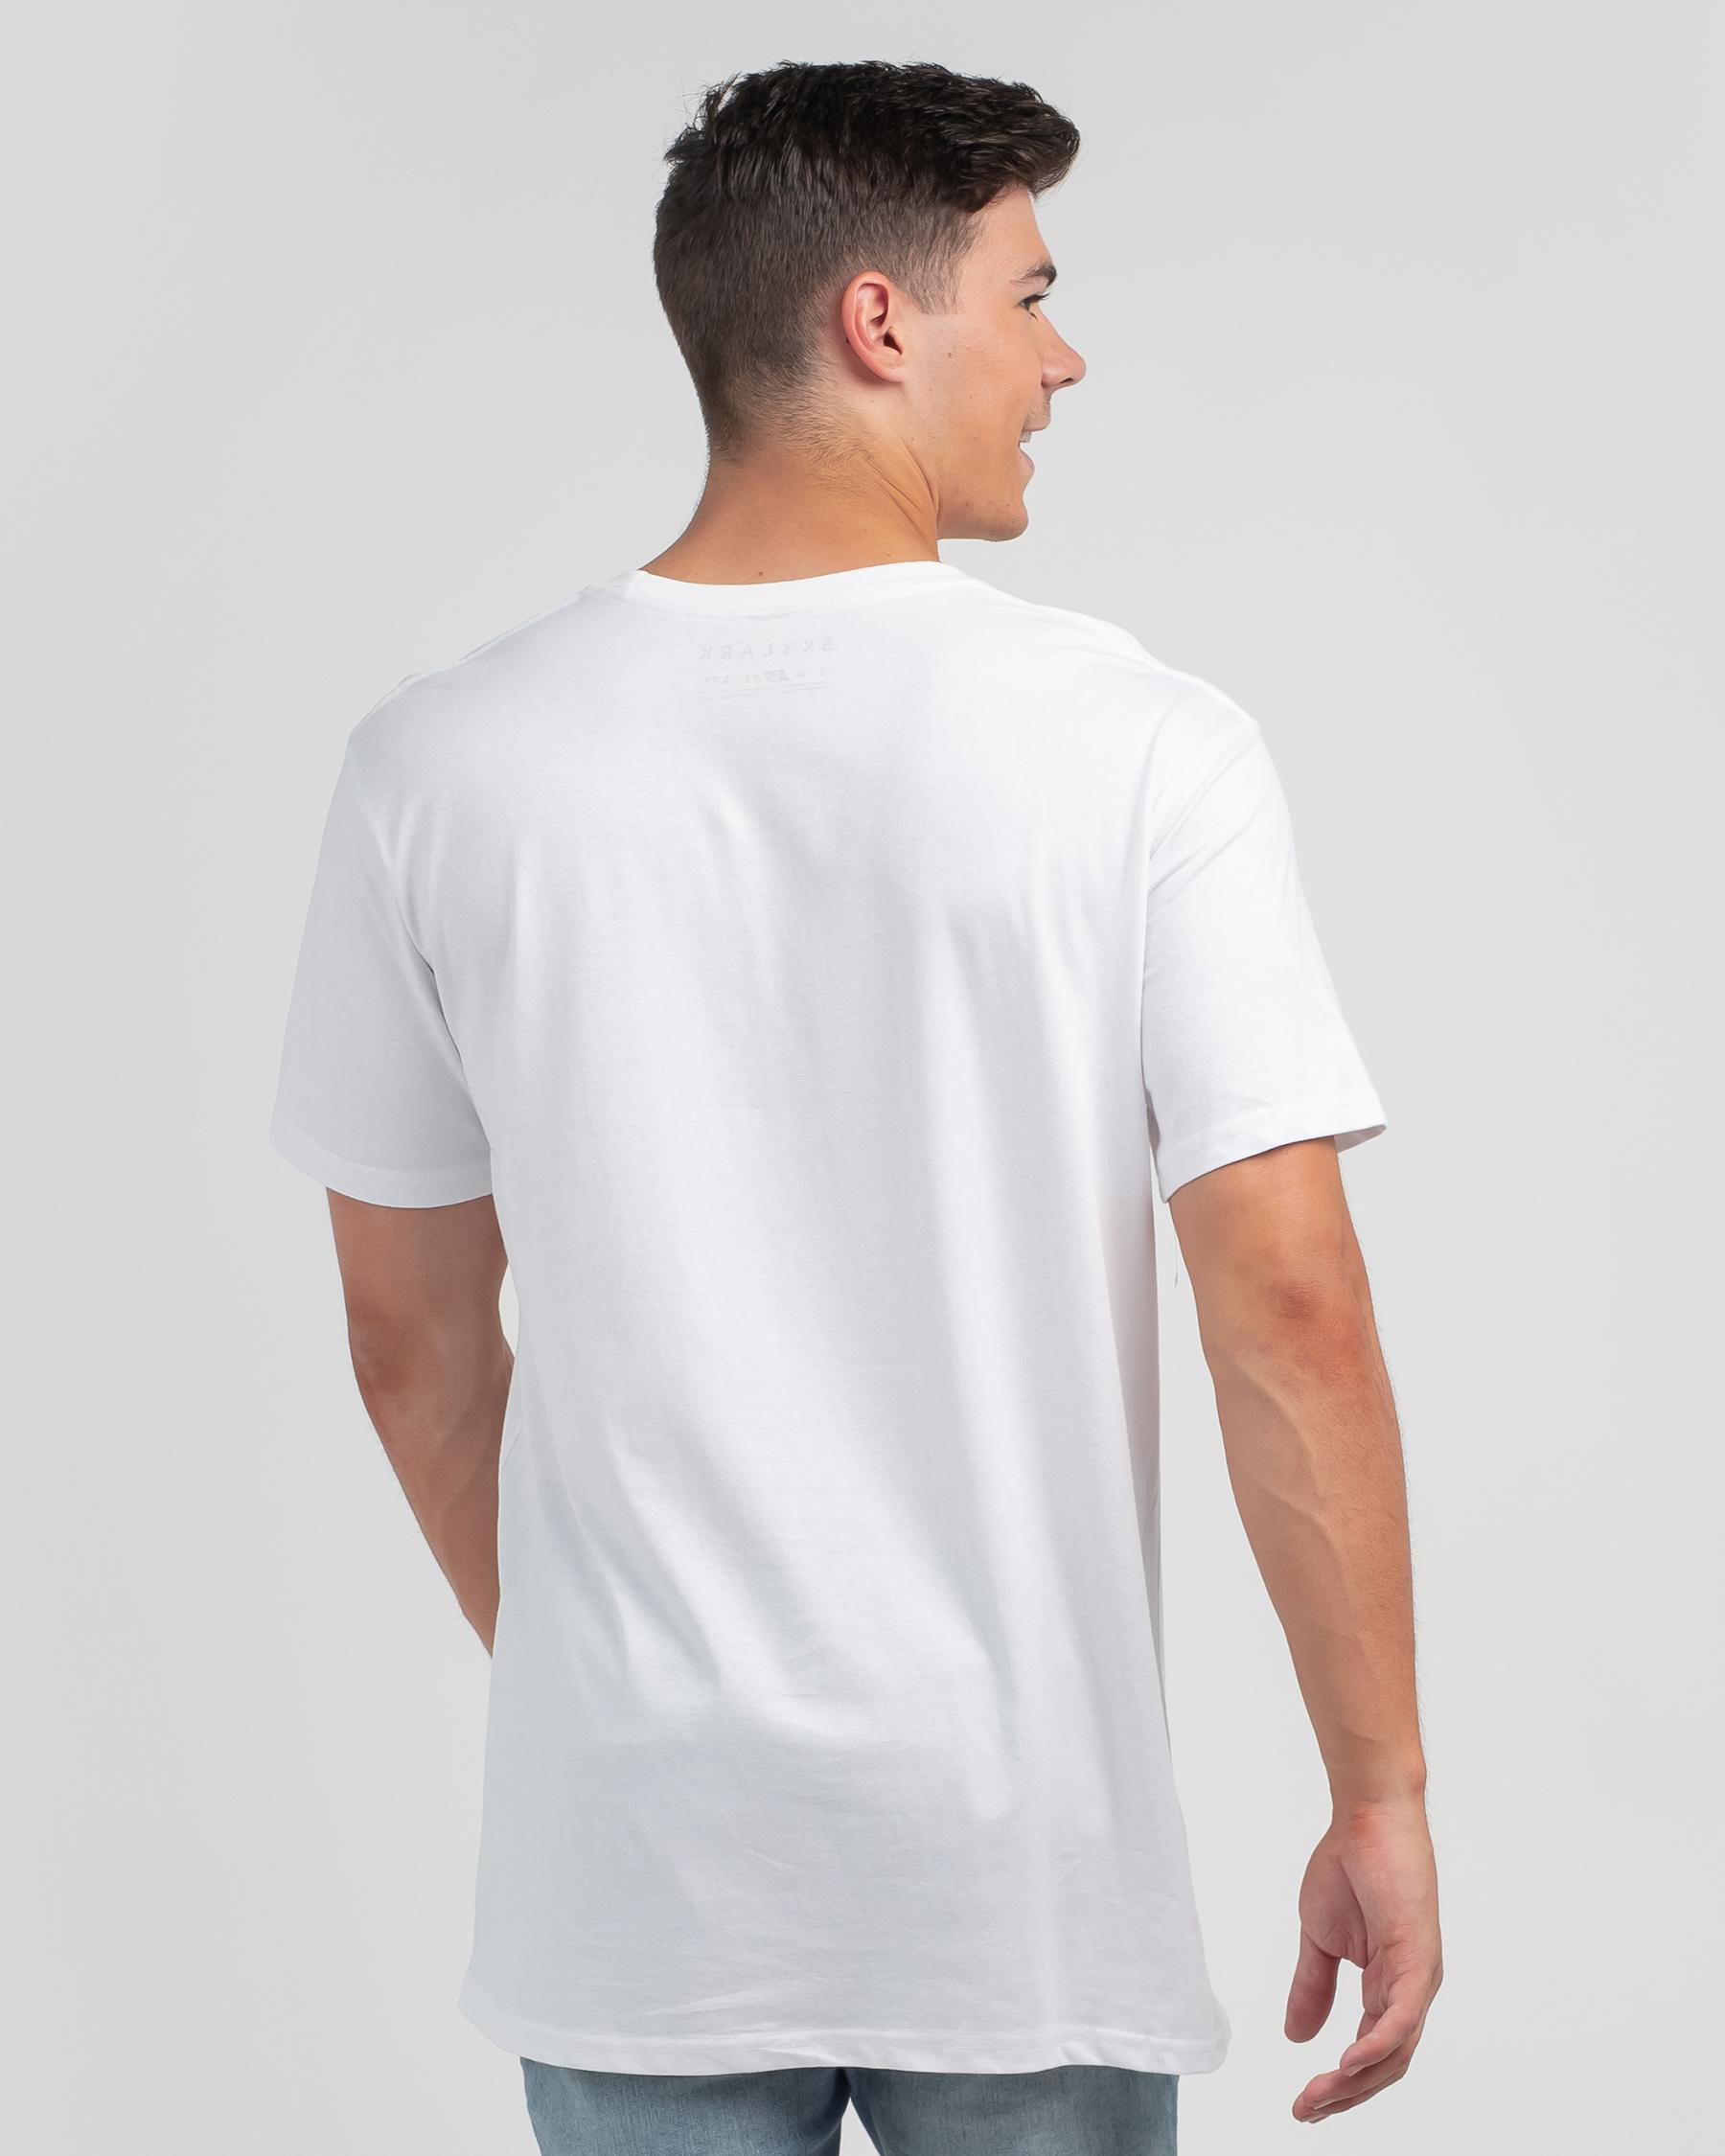 Skylark Crucial T-Shirt In White - Fast Shipping & Easy Returns - City ...